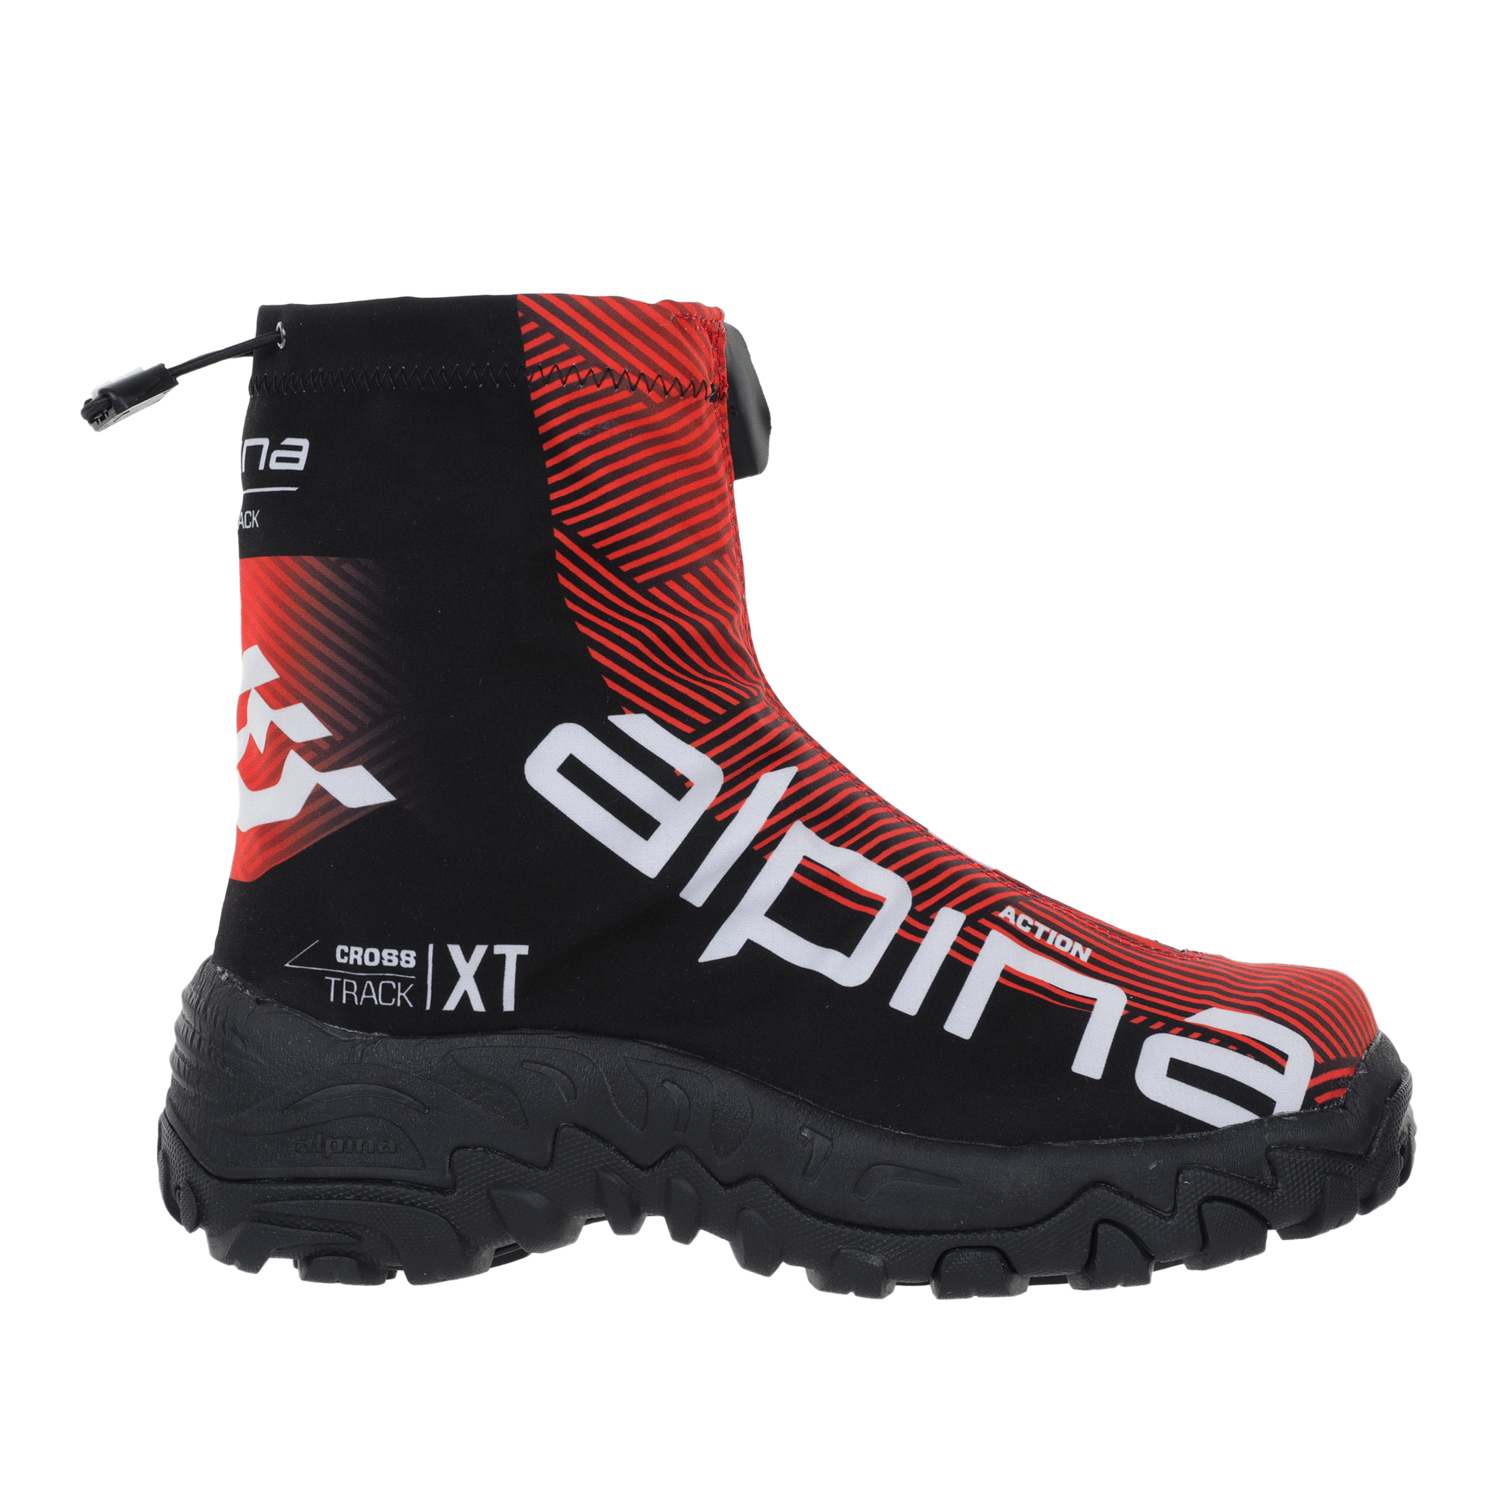 Ботинки Alpina Xt Action, red/black/white, 39 EU